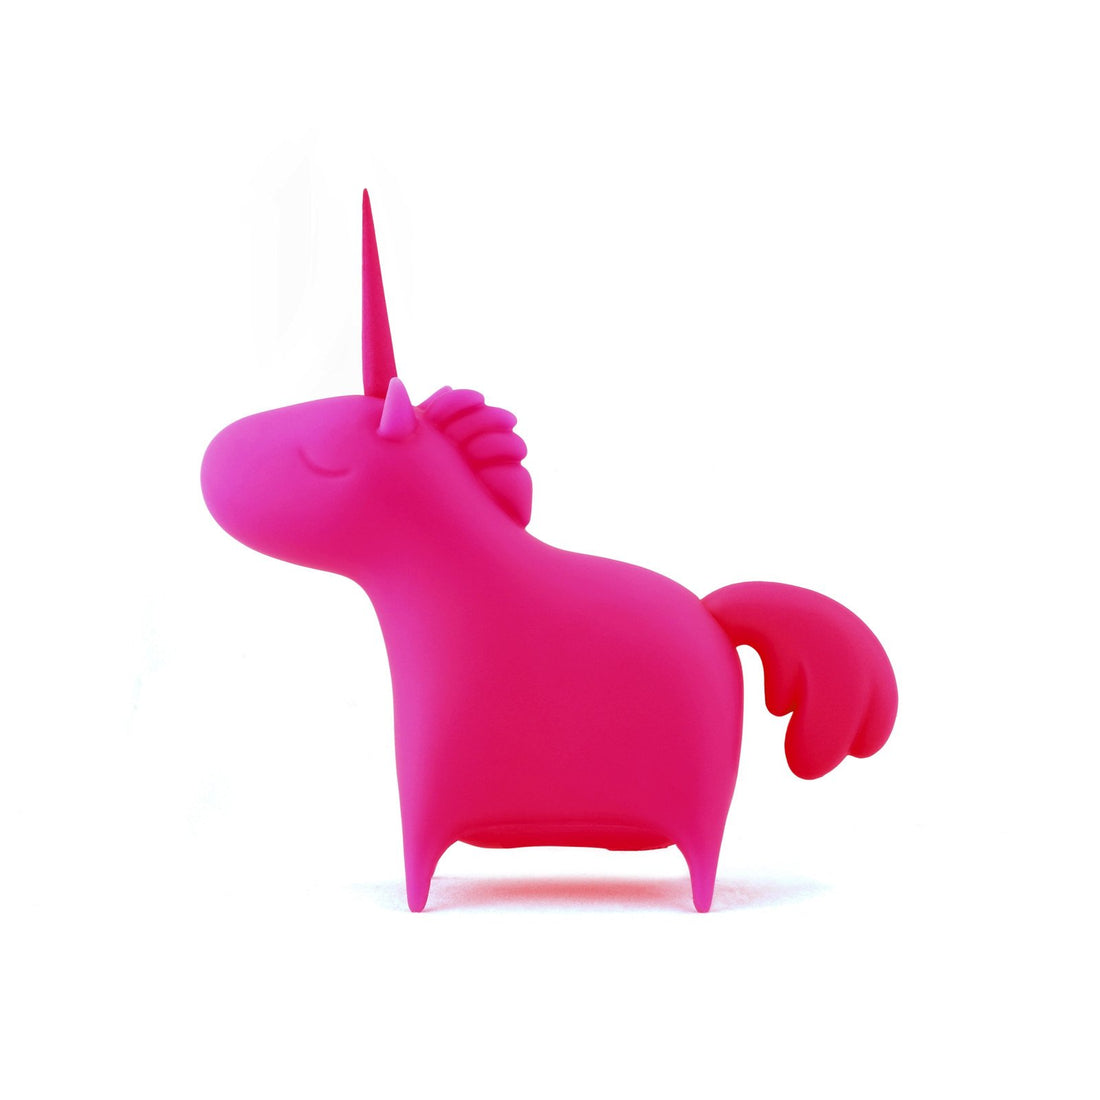 Unicorn Kiss Vinyl Toy Pink